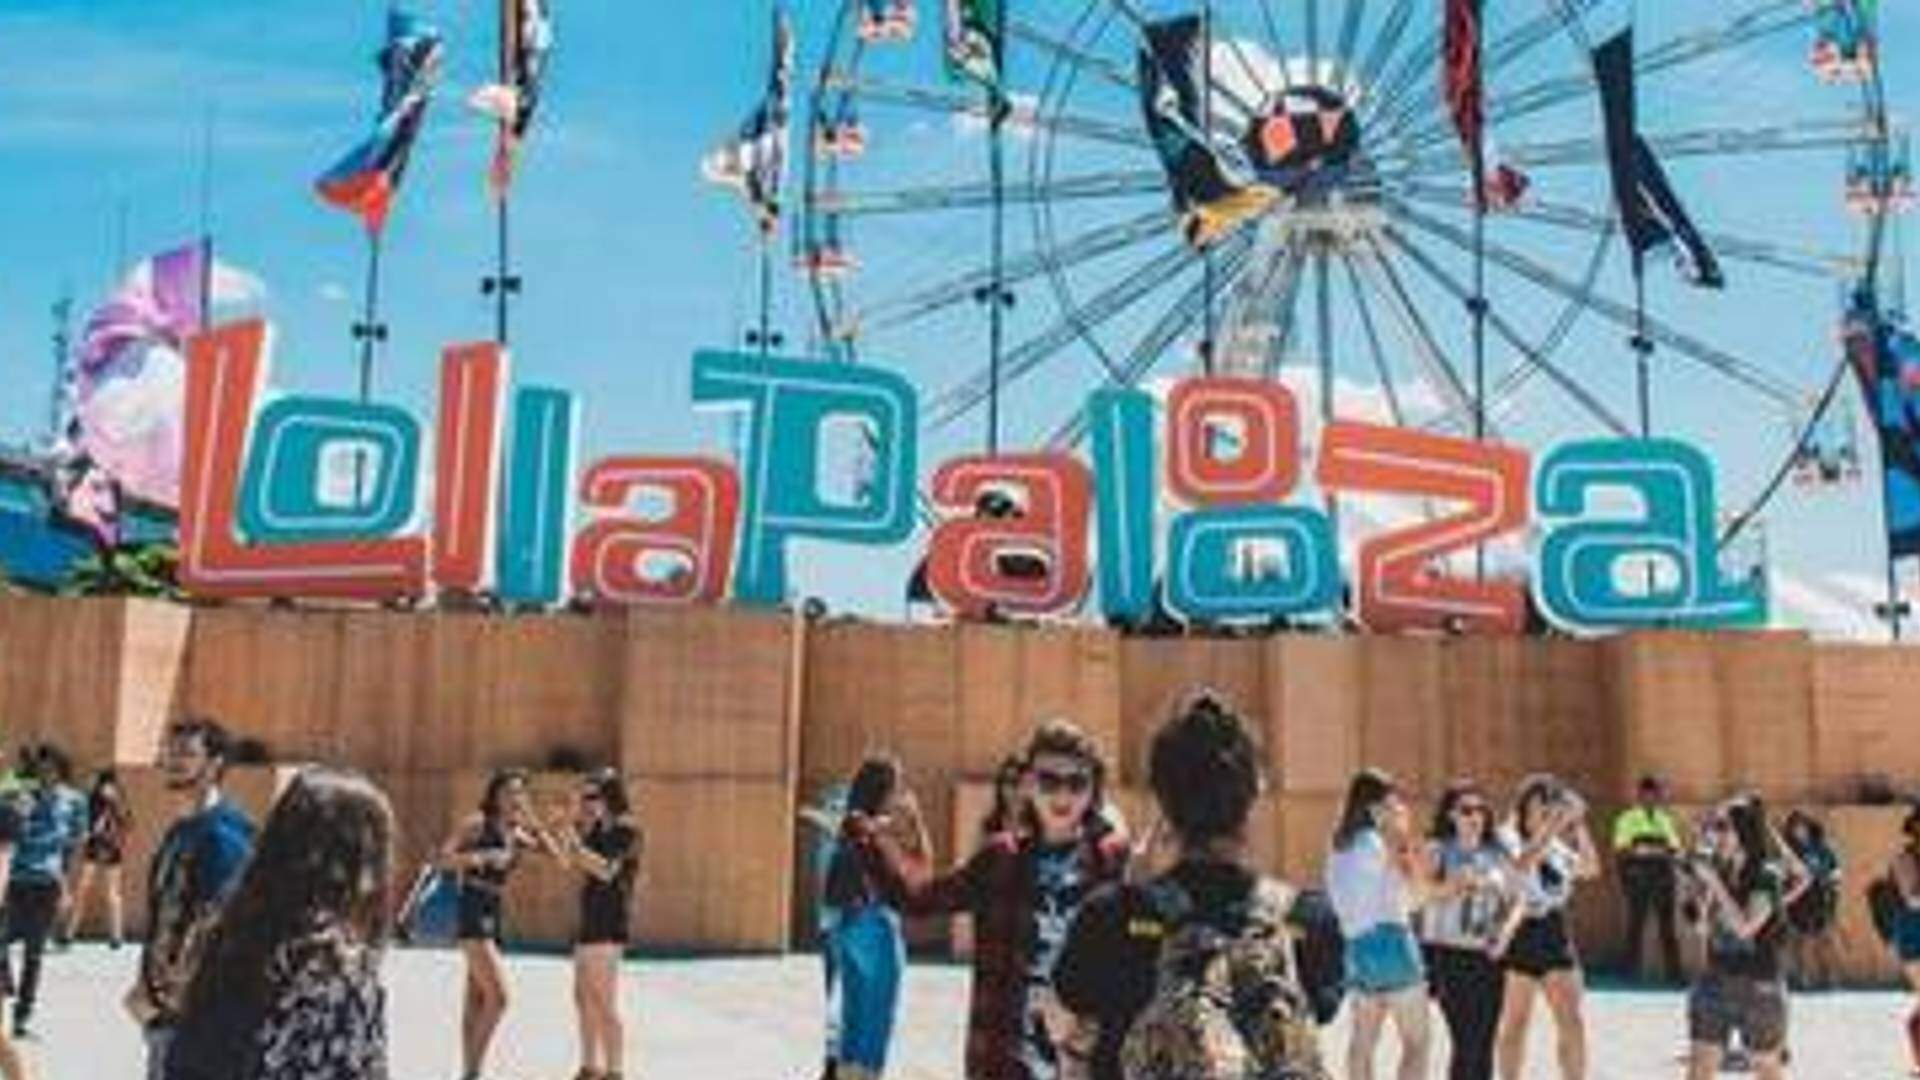 Lollapalooza Brasil 2022: festival gera curiosidade do público com vídeo: “Spoilerzinho” - Metropolitana FM